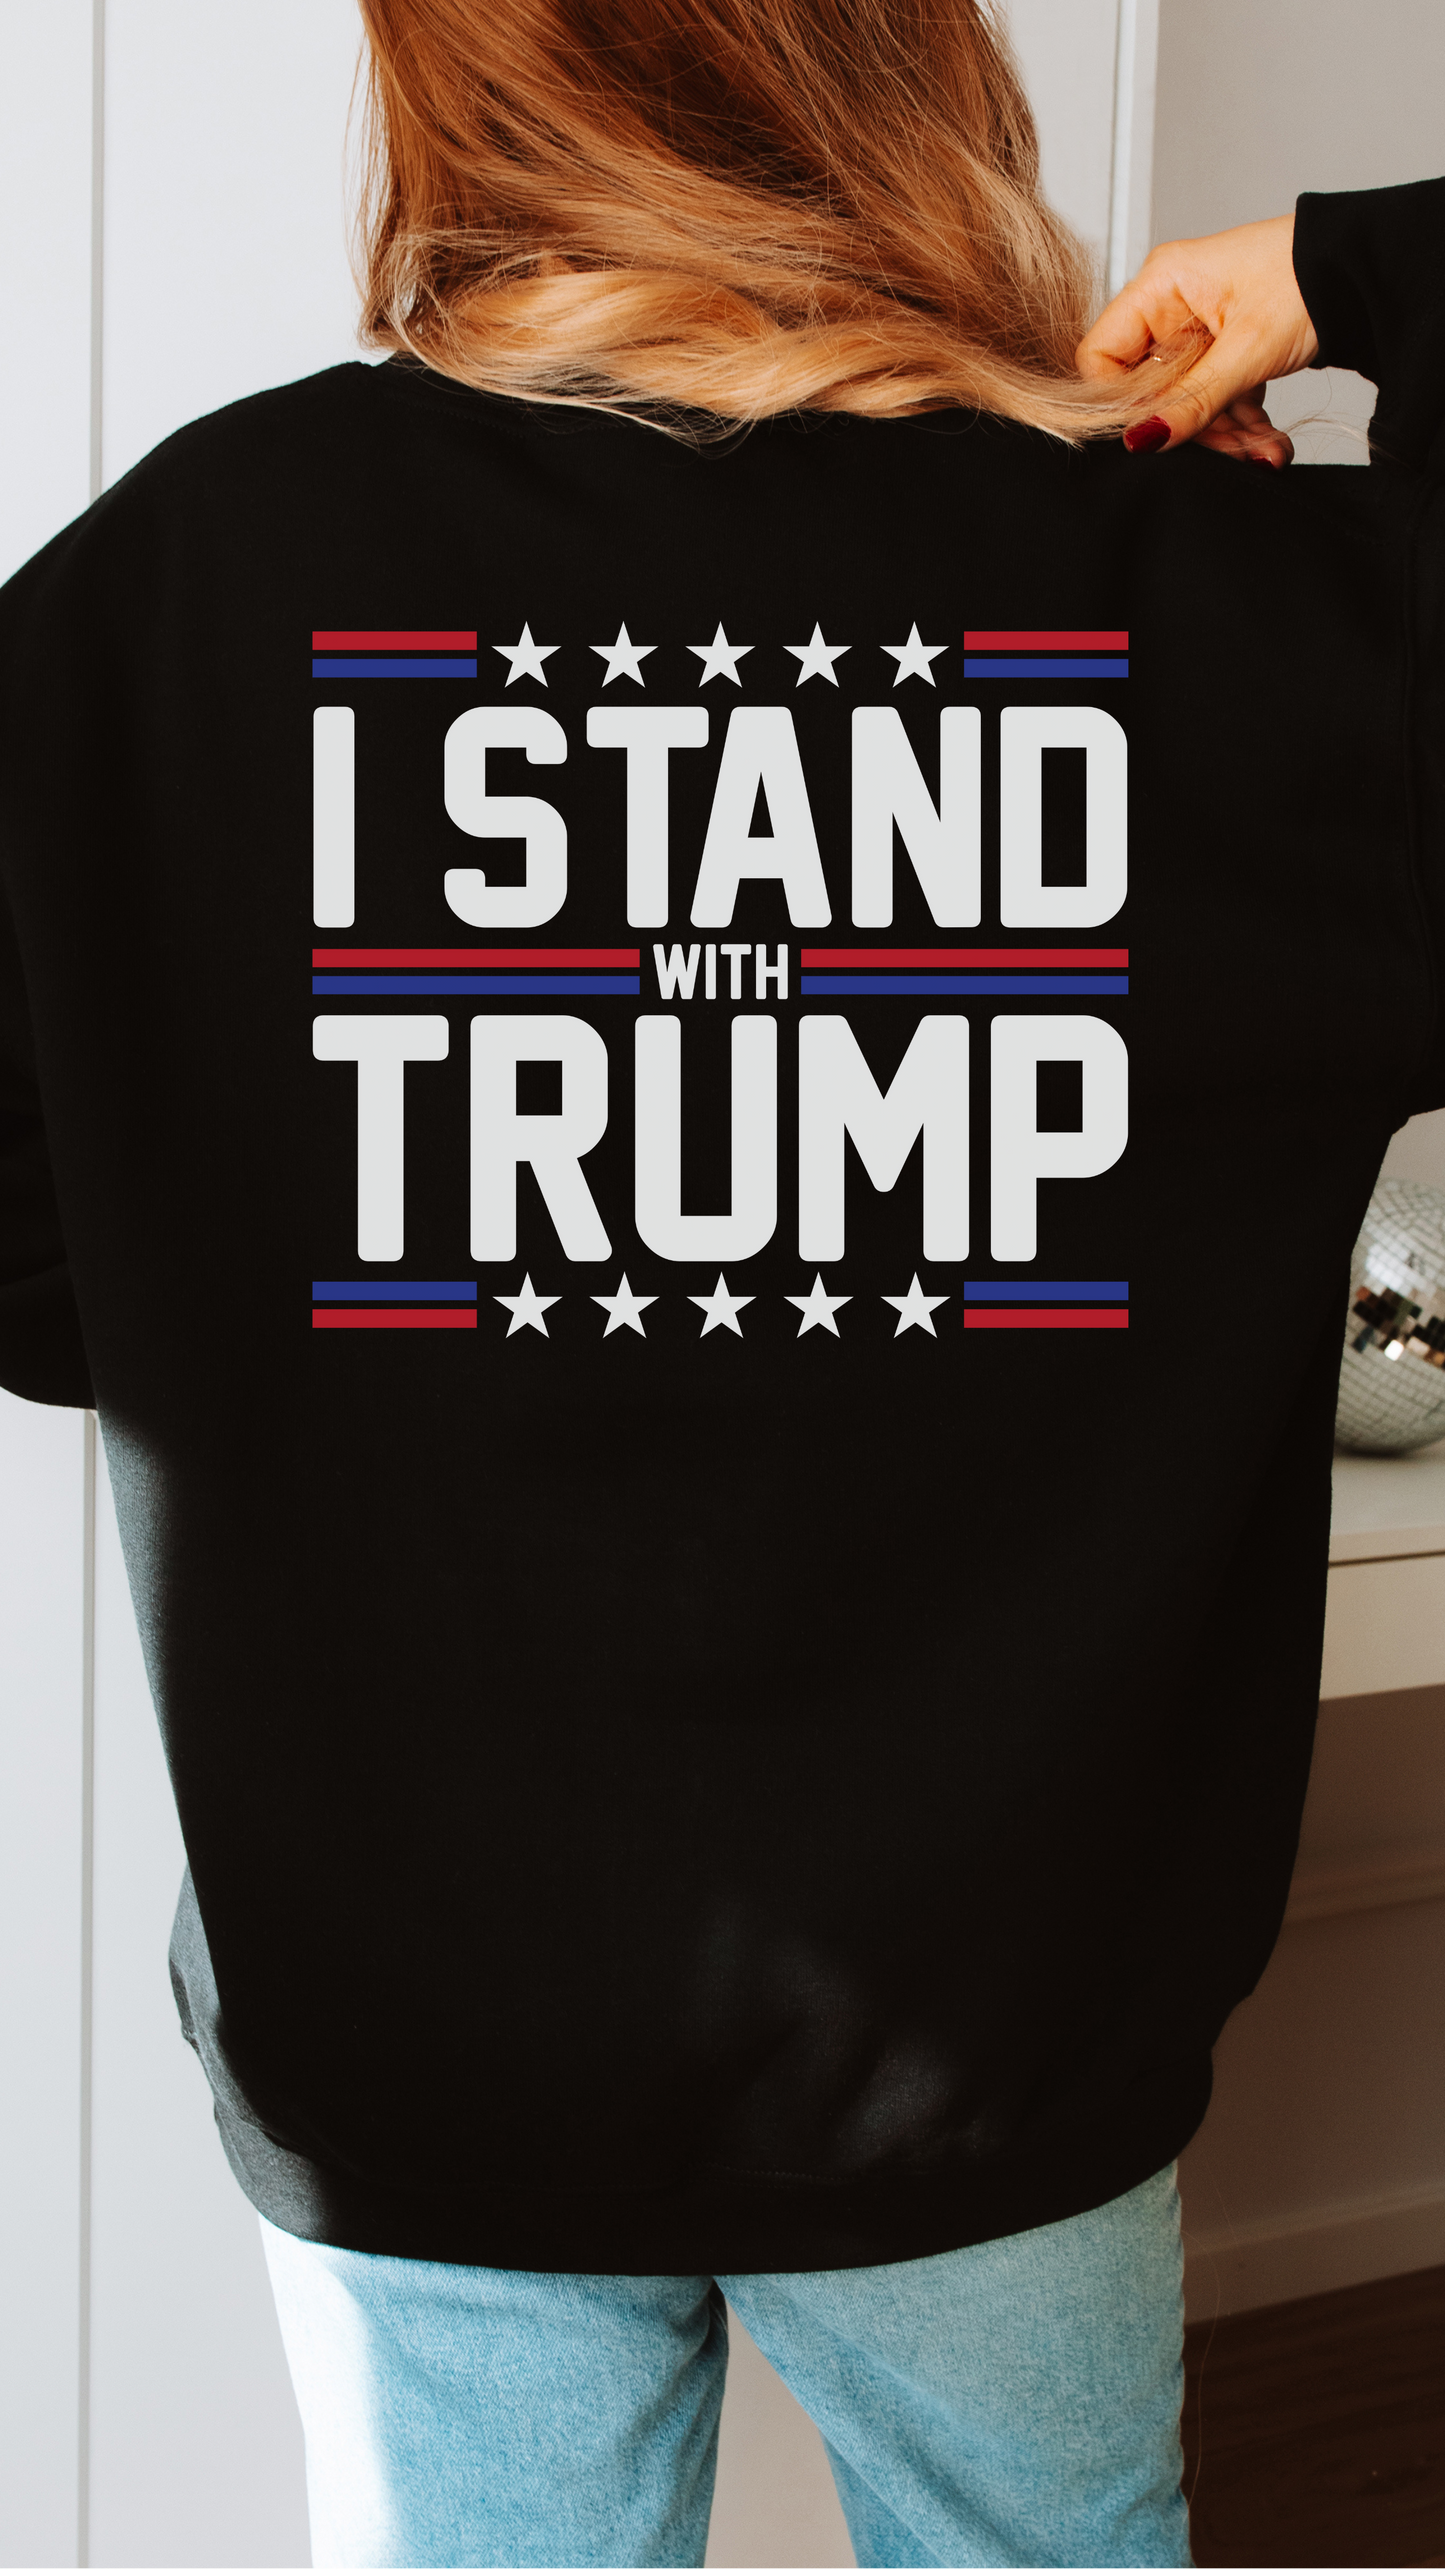 2024 Trump Crewneck Sweater